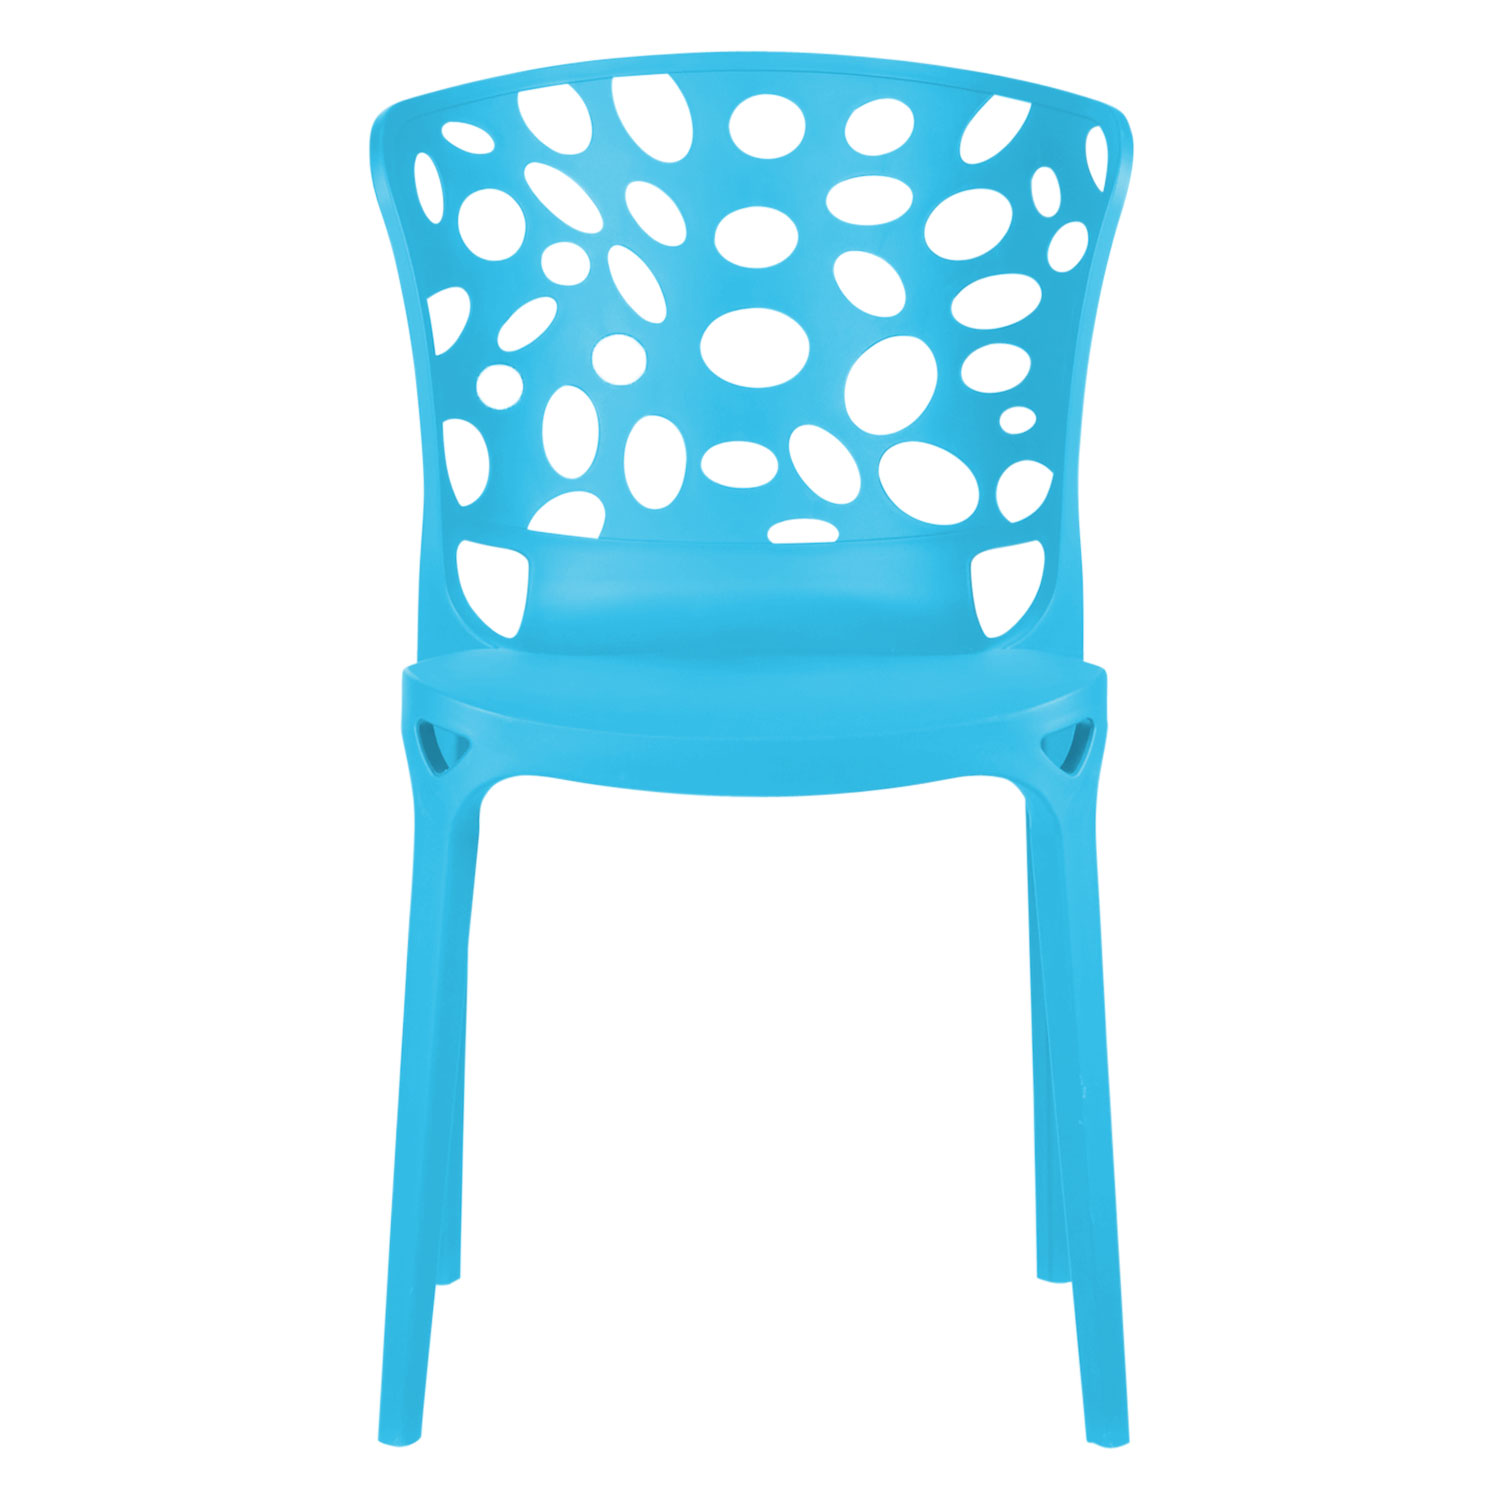 Chaise de jardin Lot de 6 Moderne Bleu Chaises design Plastique Chaises exterieur Chaises empilable Chaise de cuisine